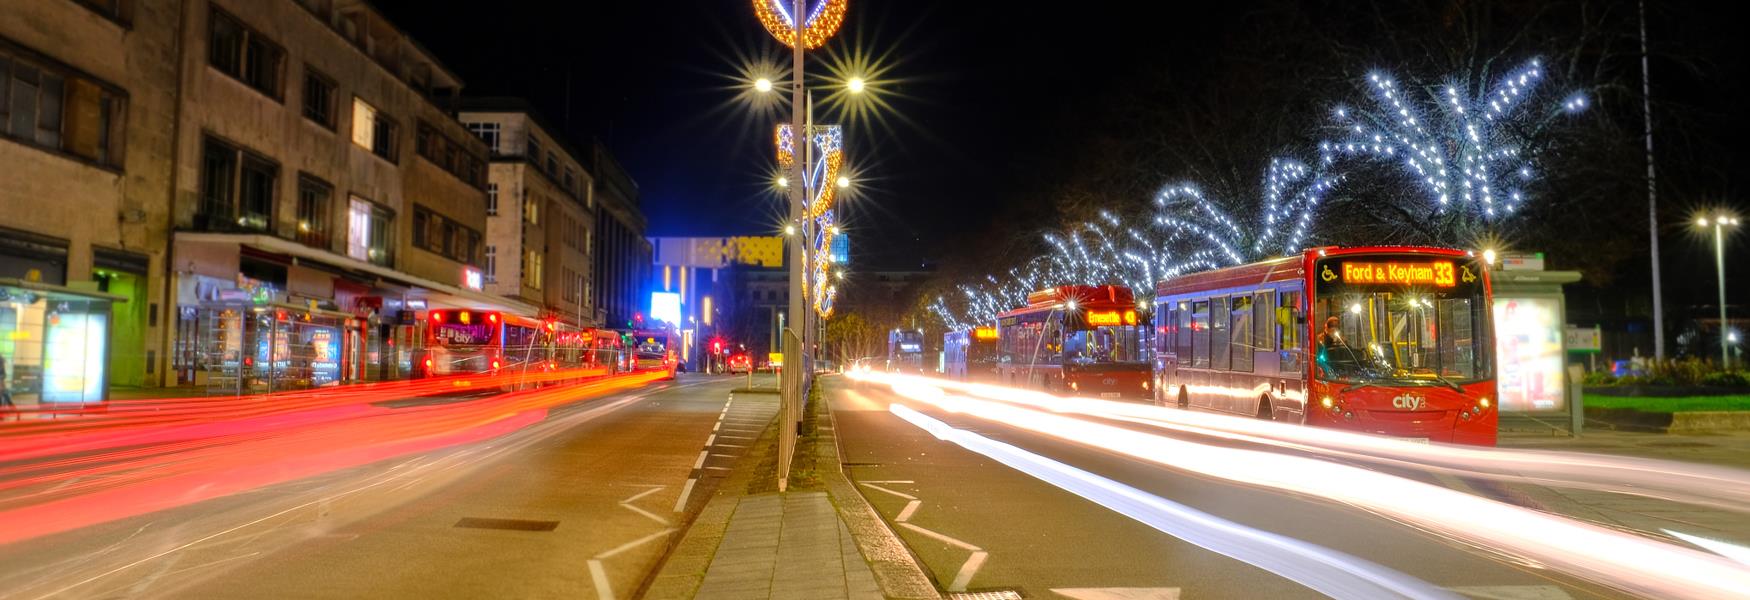 Christmas lights on street with buses